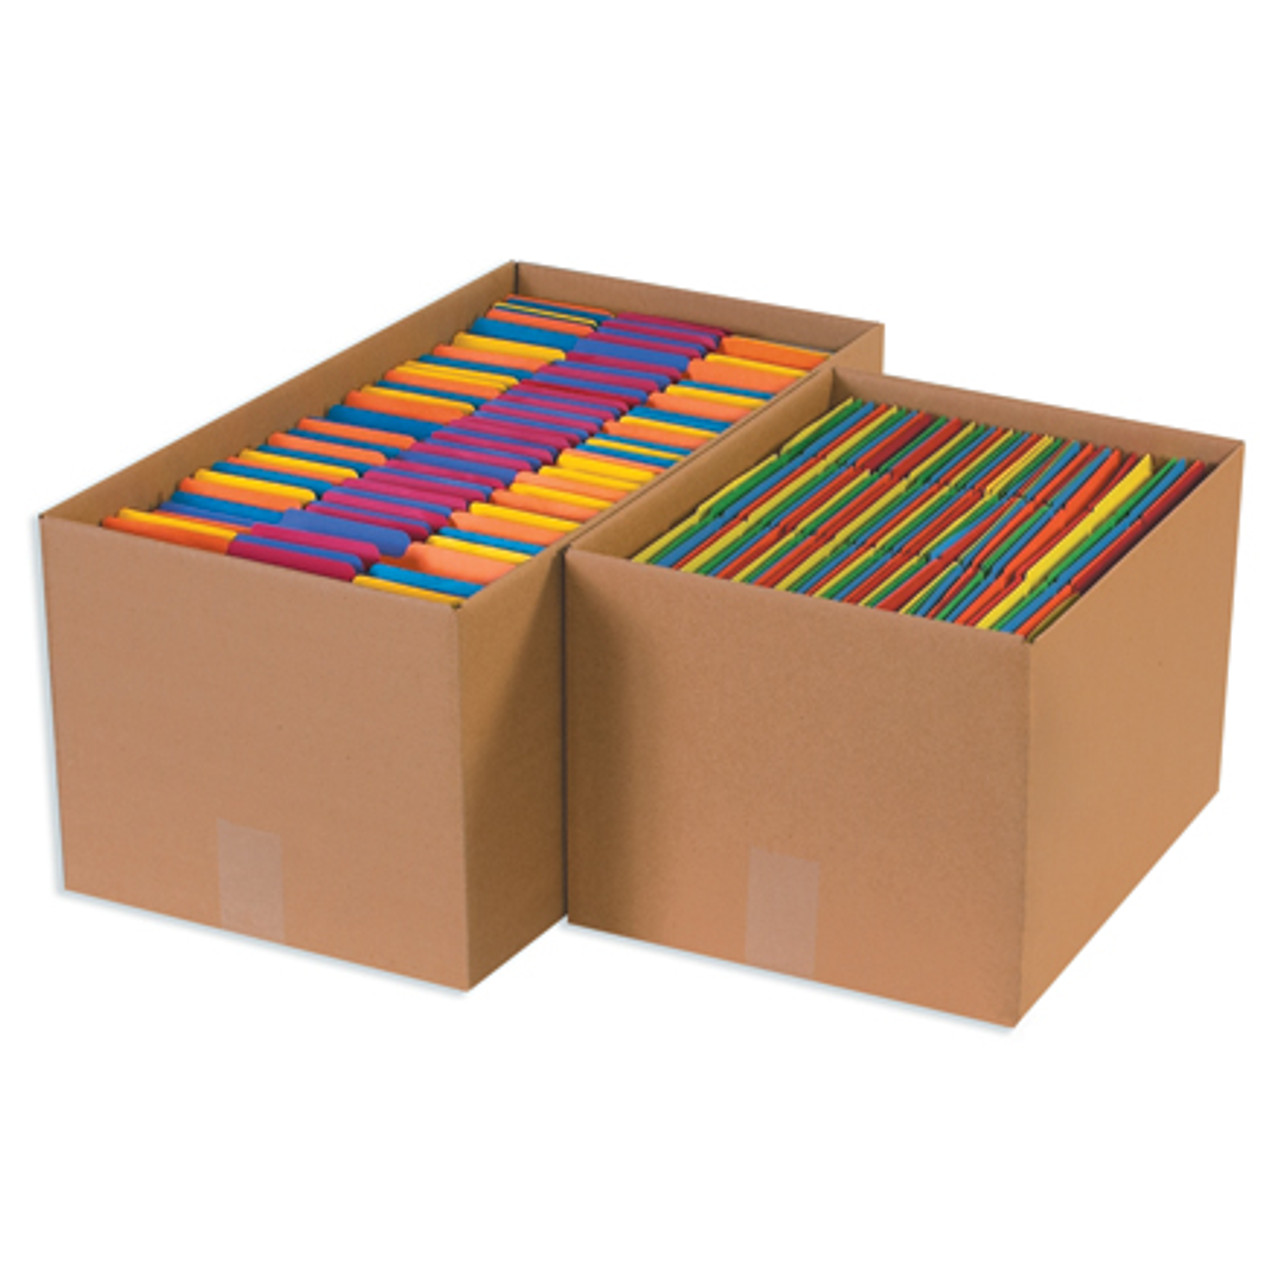 15 x 12 x 10 Economy File Storage Boxes 12/Bundle